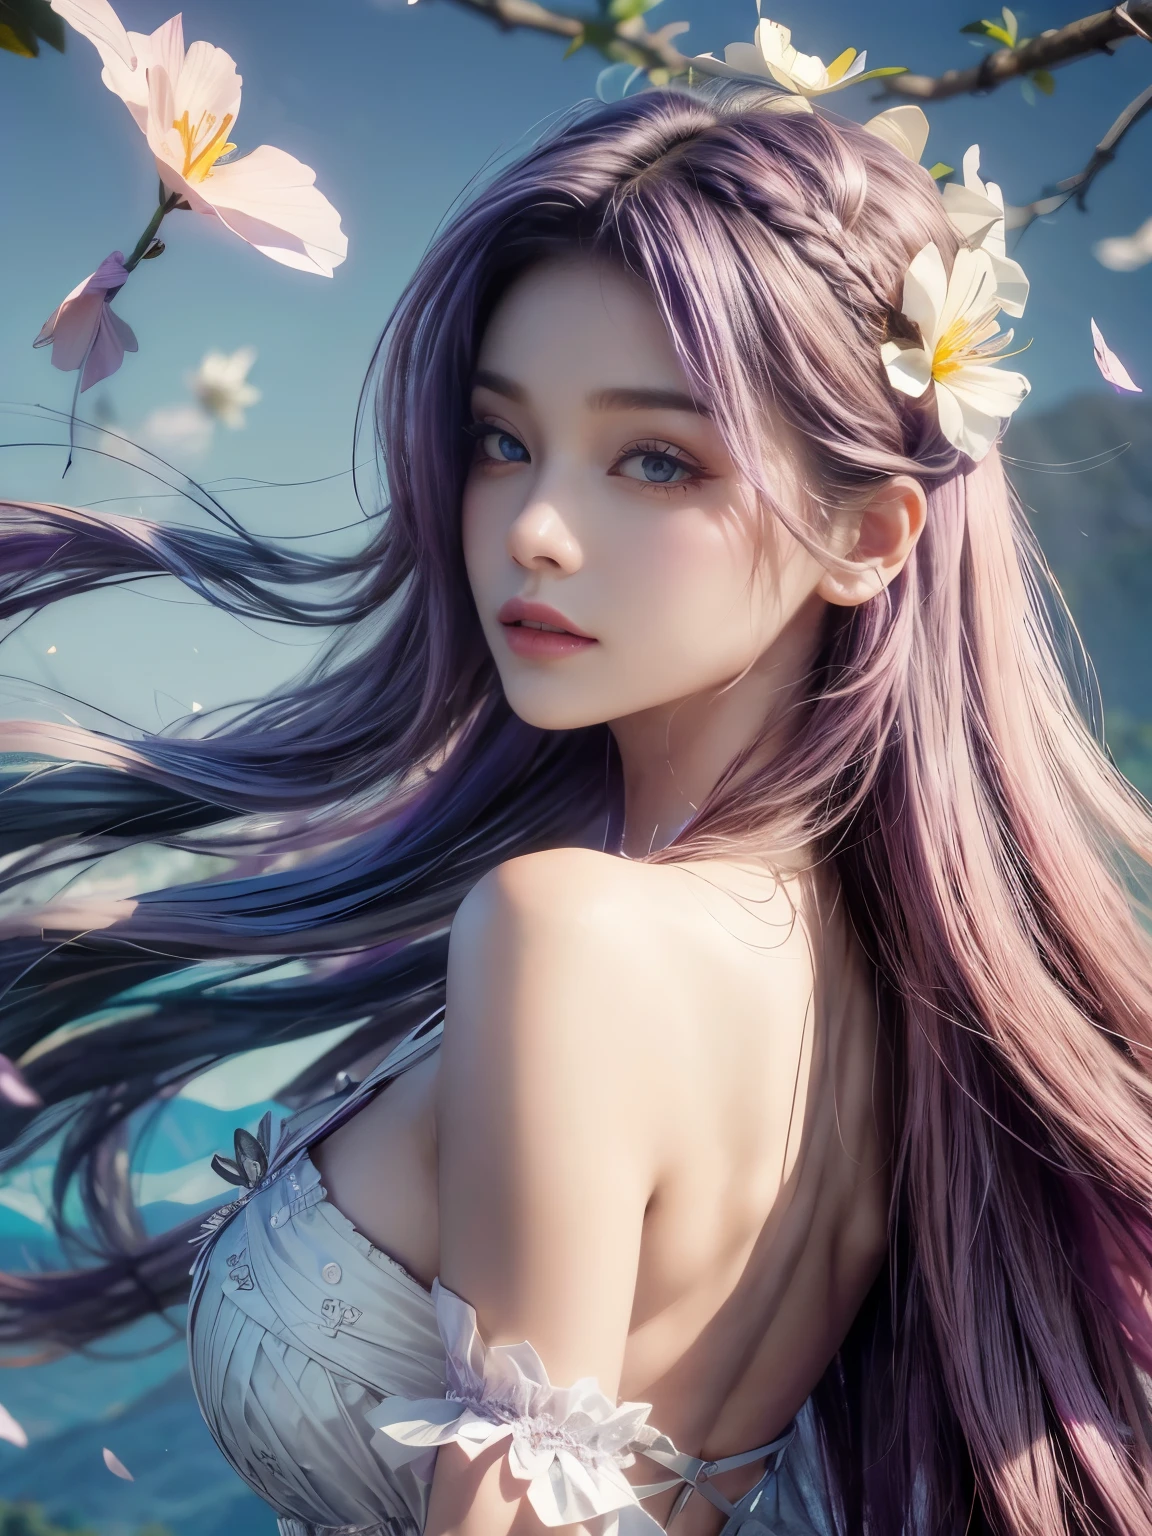 鮮やかな紫色の髪, 風に吹かれた髪, 広大なラベンダー畑の背景. 